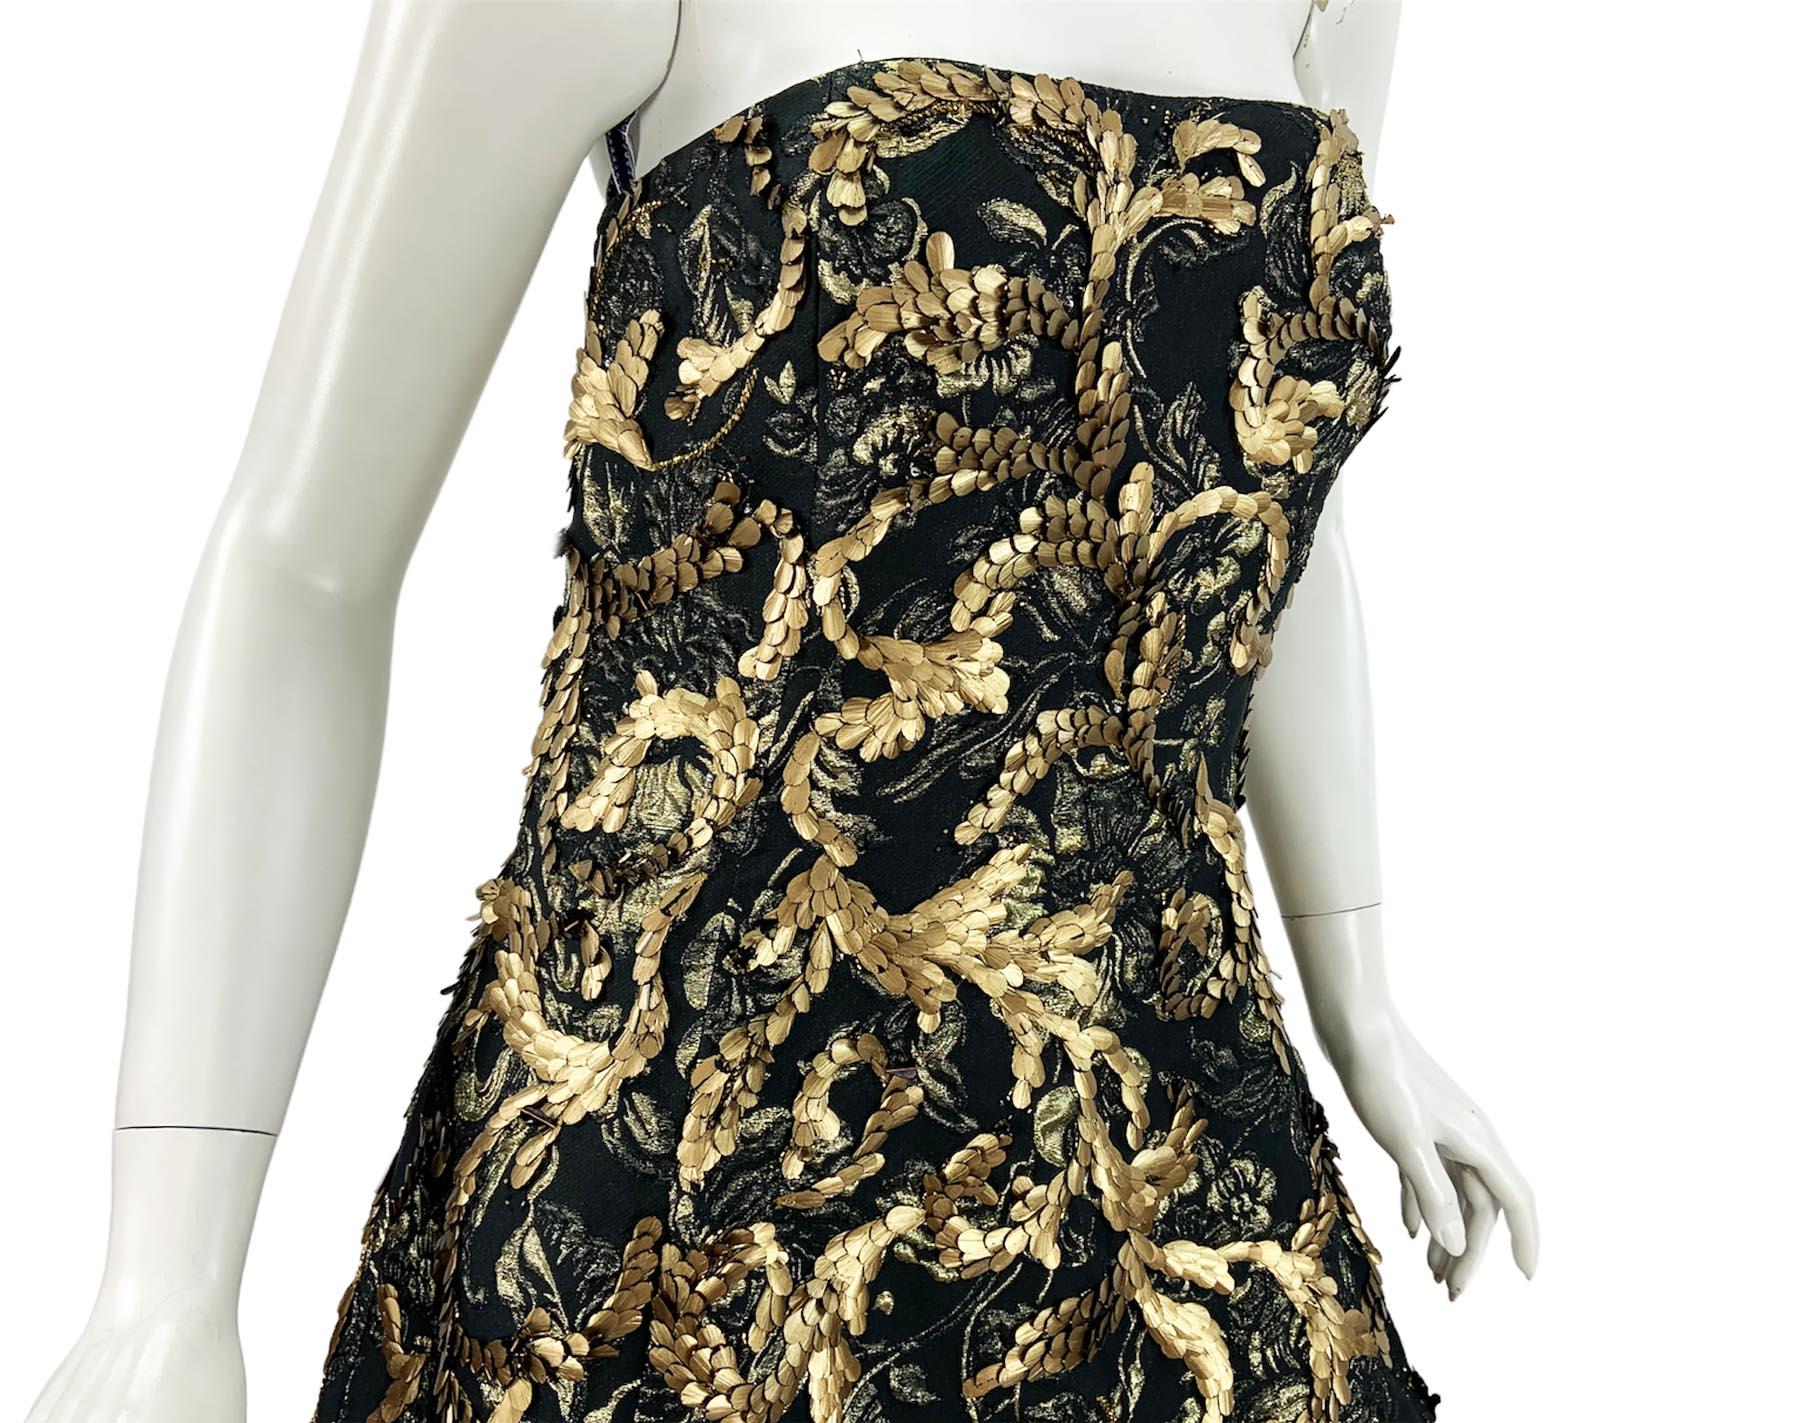 Oscar de la Renta FW 2014 Runway Museum Red Carpet Black Gold Gown Dress L / XL For Sale 7